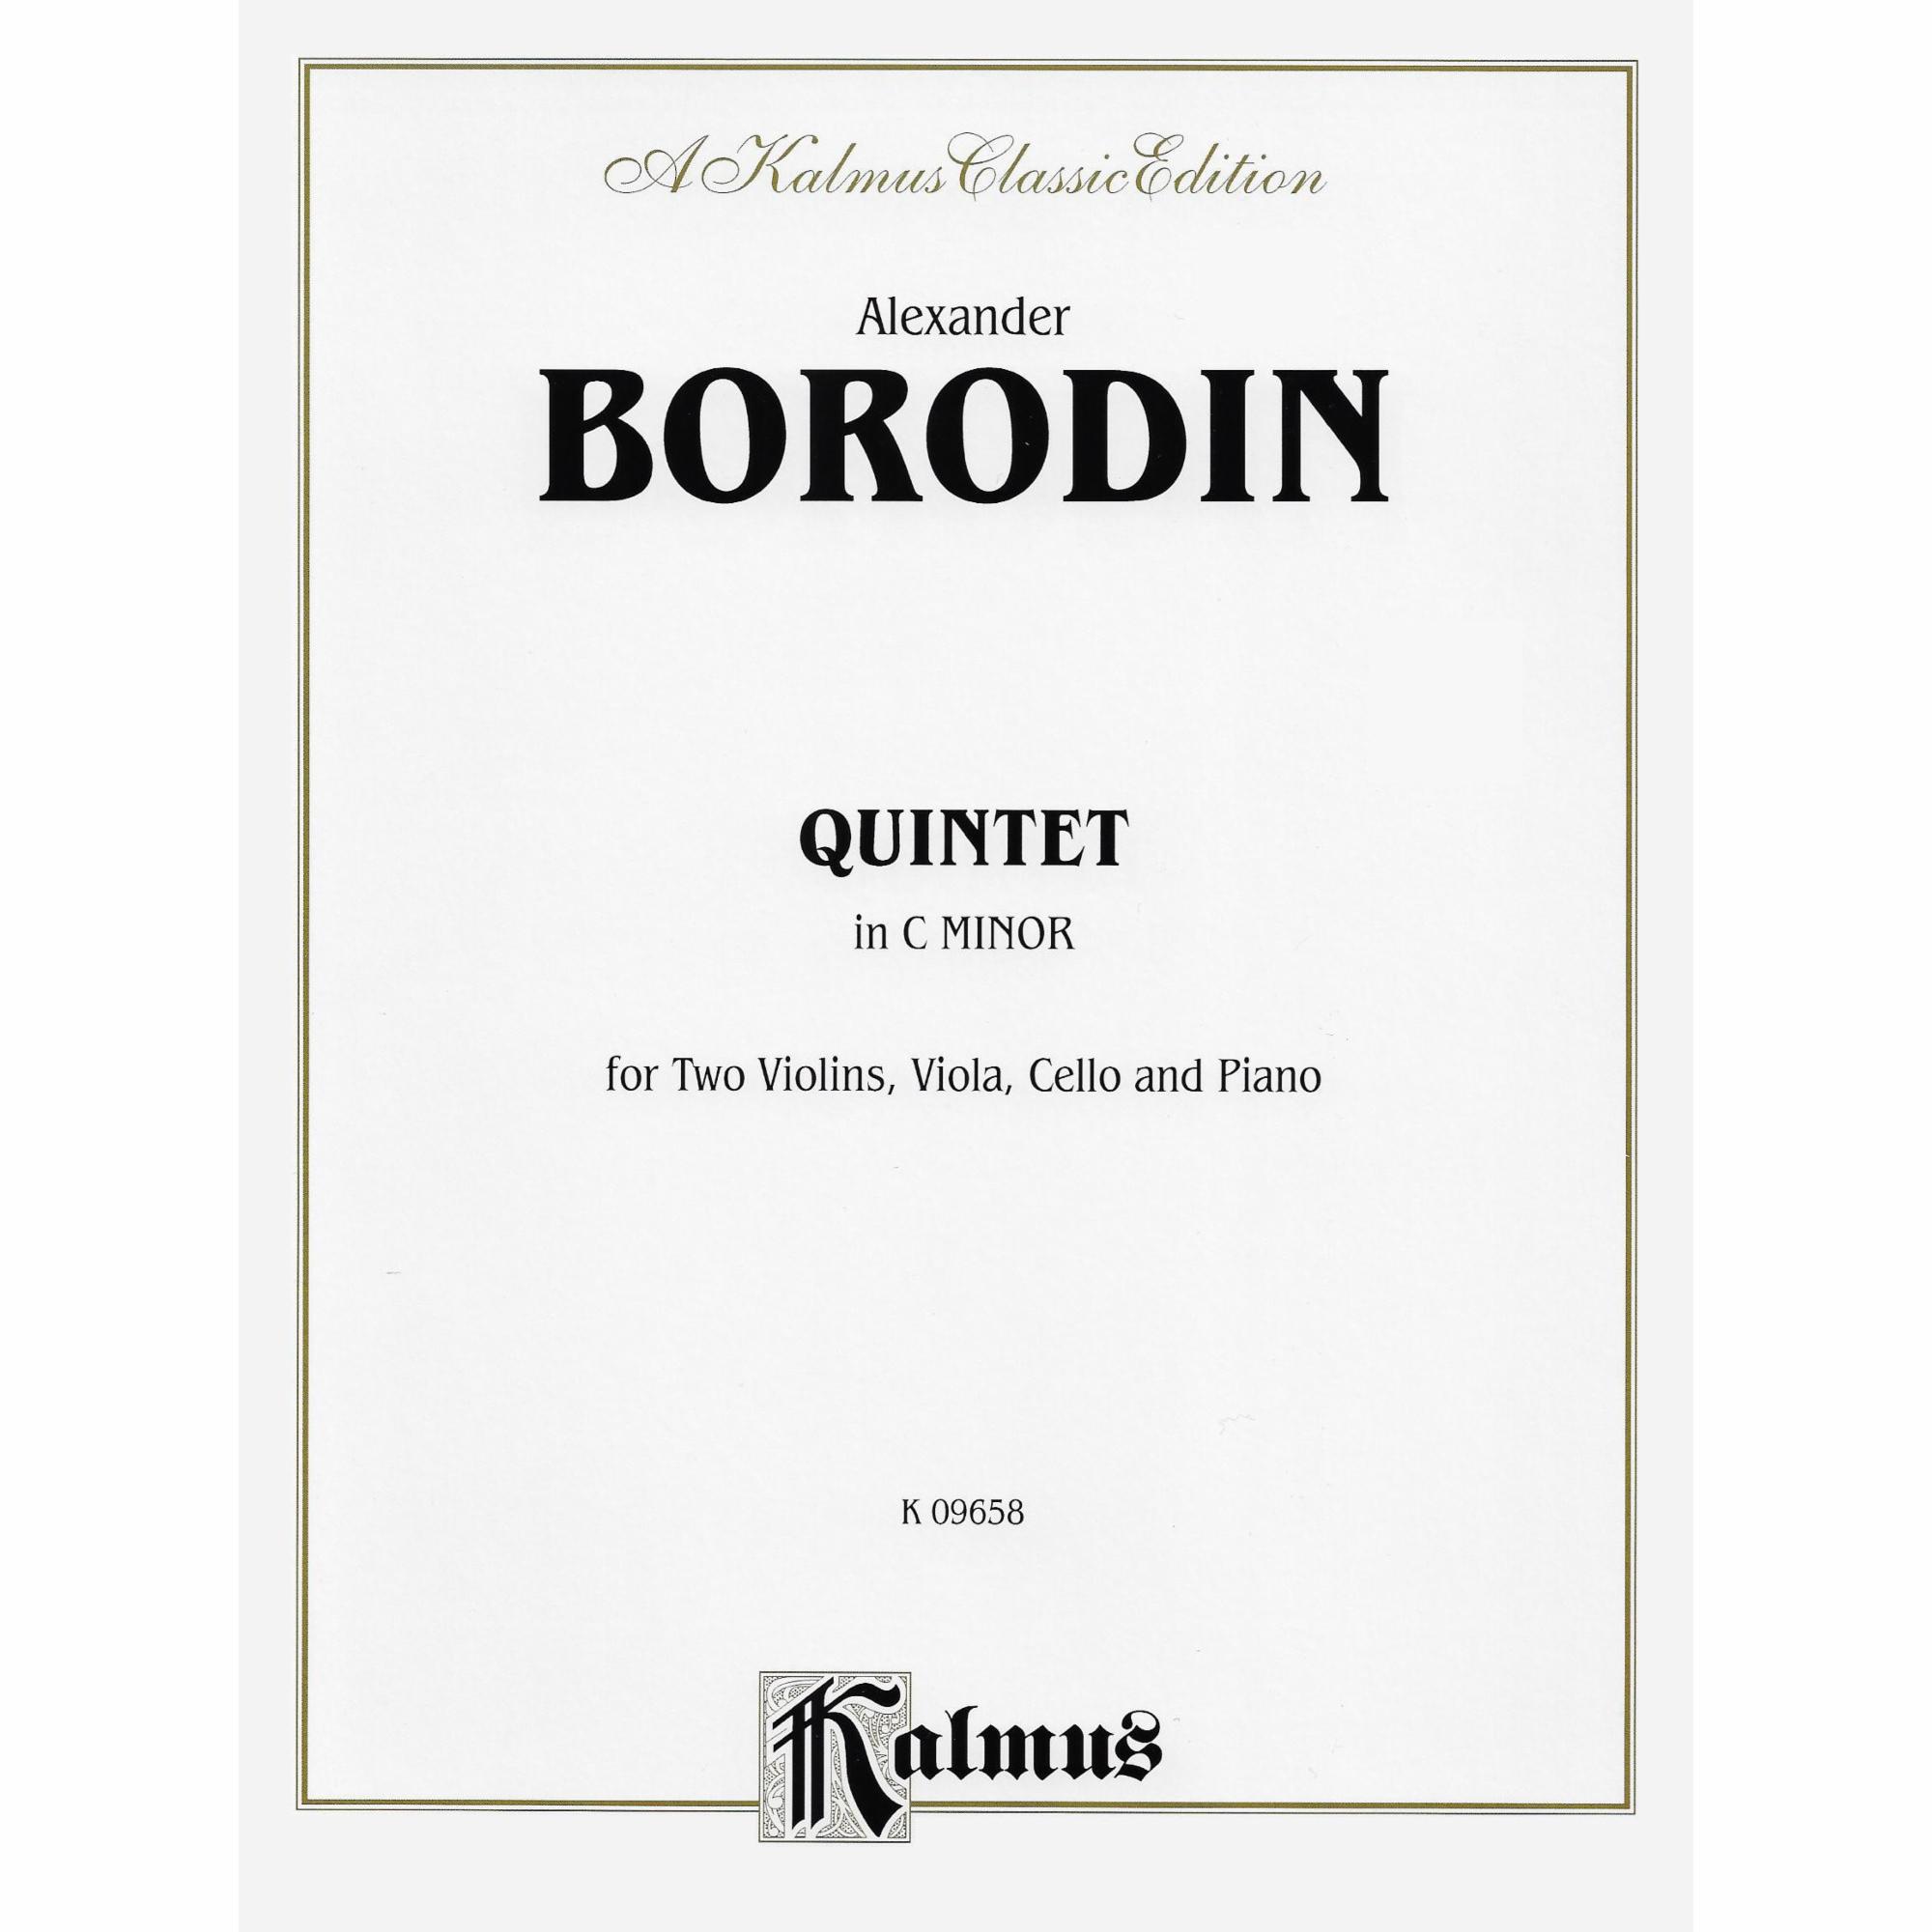 Borodin -- Piano Quintet in C Minor